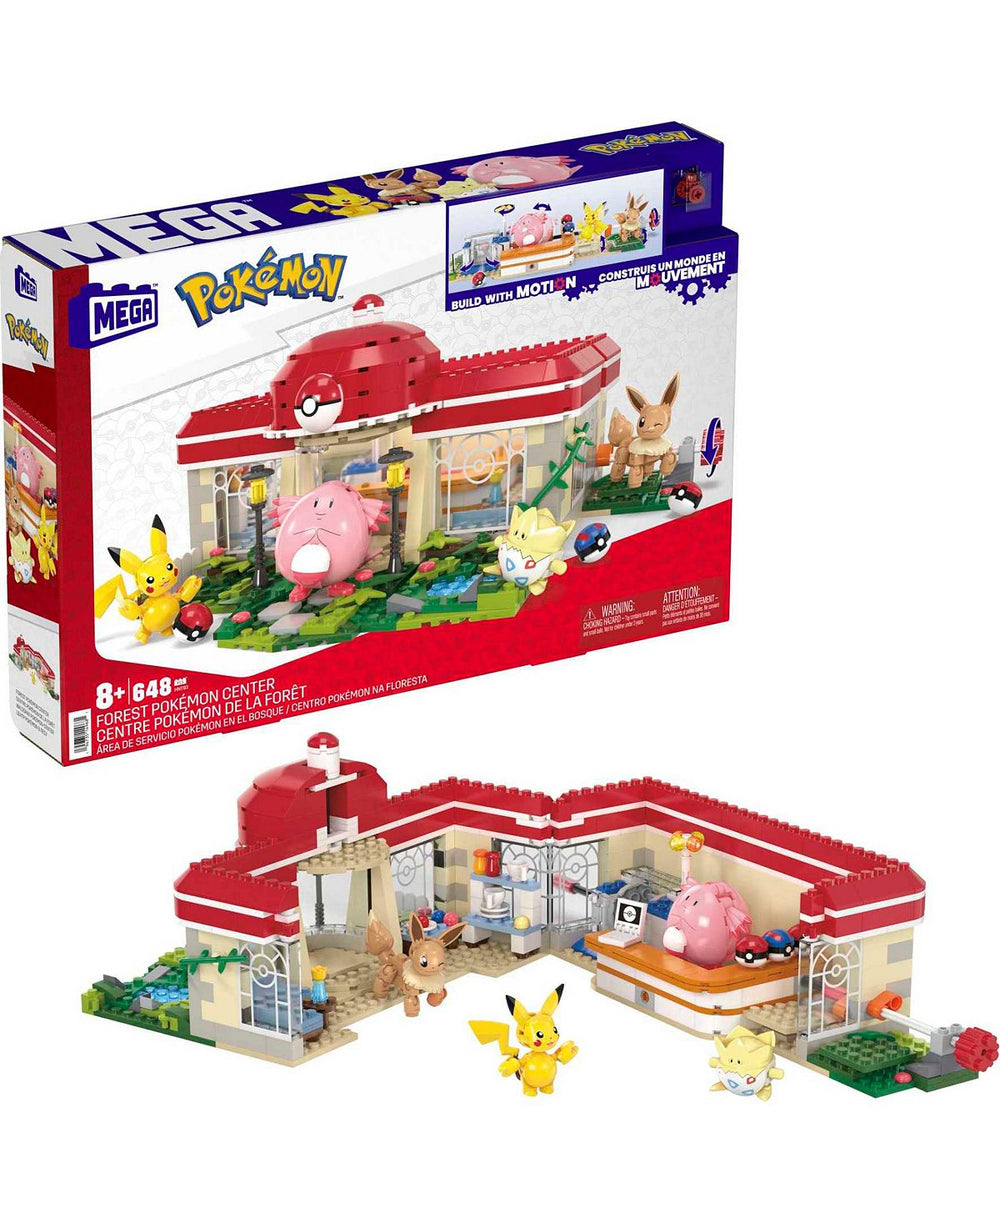 MEGA Pokemon Adventure Builder: Forest Pokemon Center Building Set - 648 Pieces